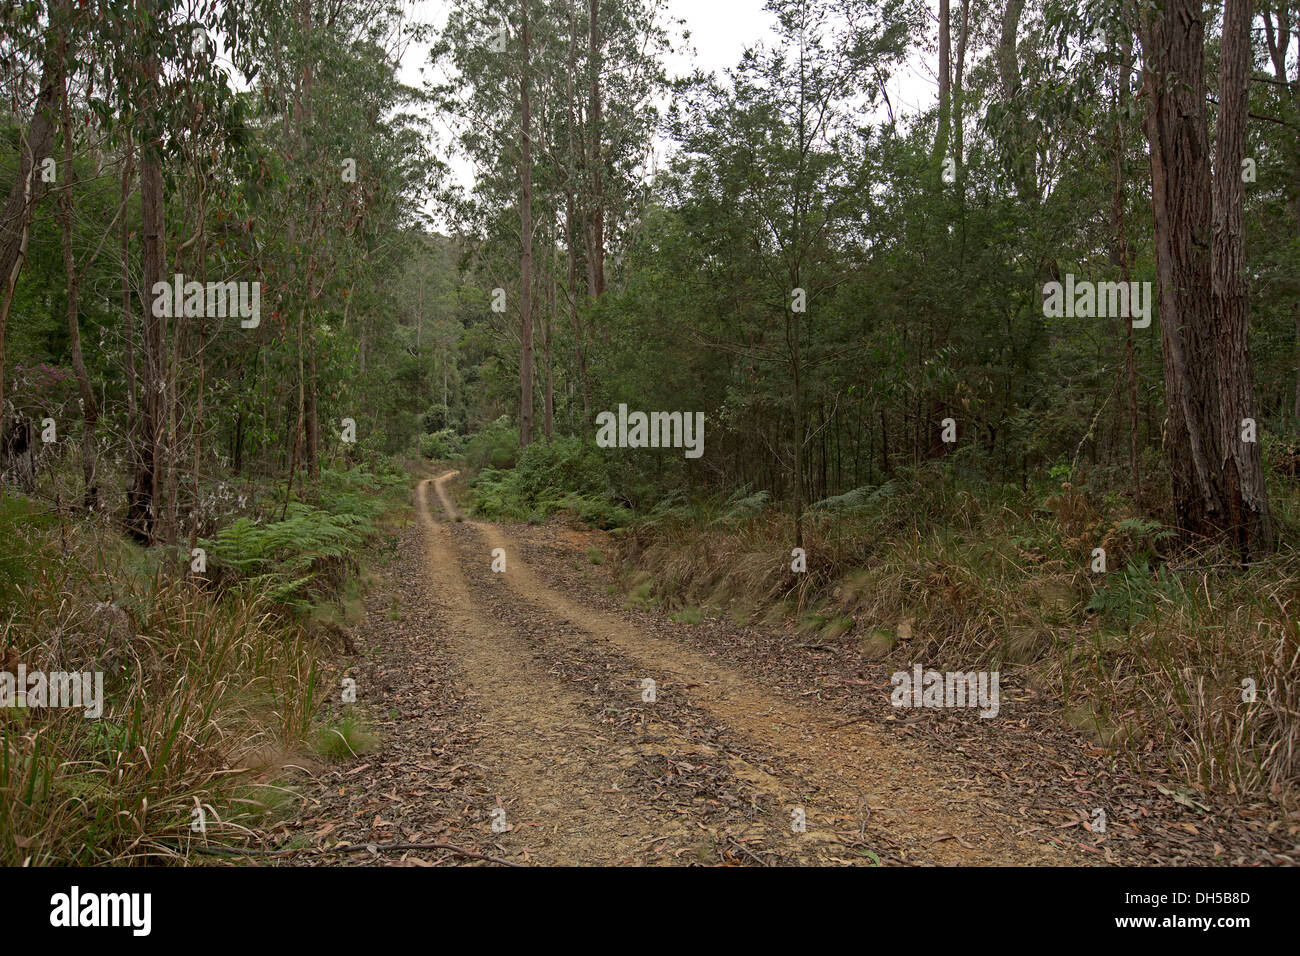 Paesaggio con carreggiata stretta infilzare attraverso fitte foreste con smeraldo felci arboree Nowendoc nel Parco Nazionale di NSW Australia Foto Stock